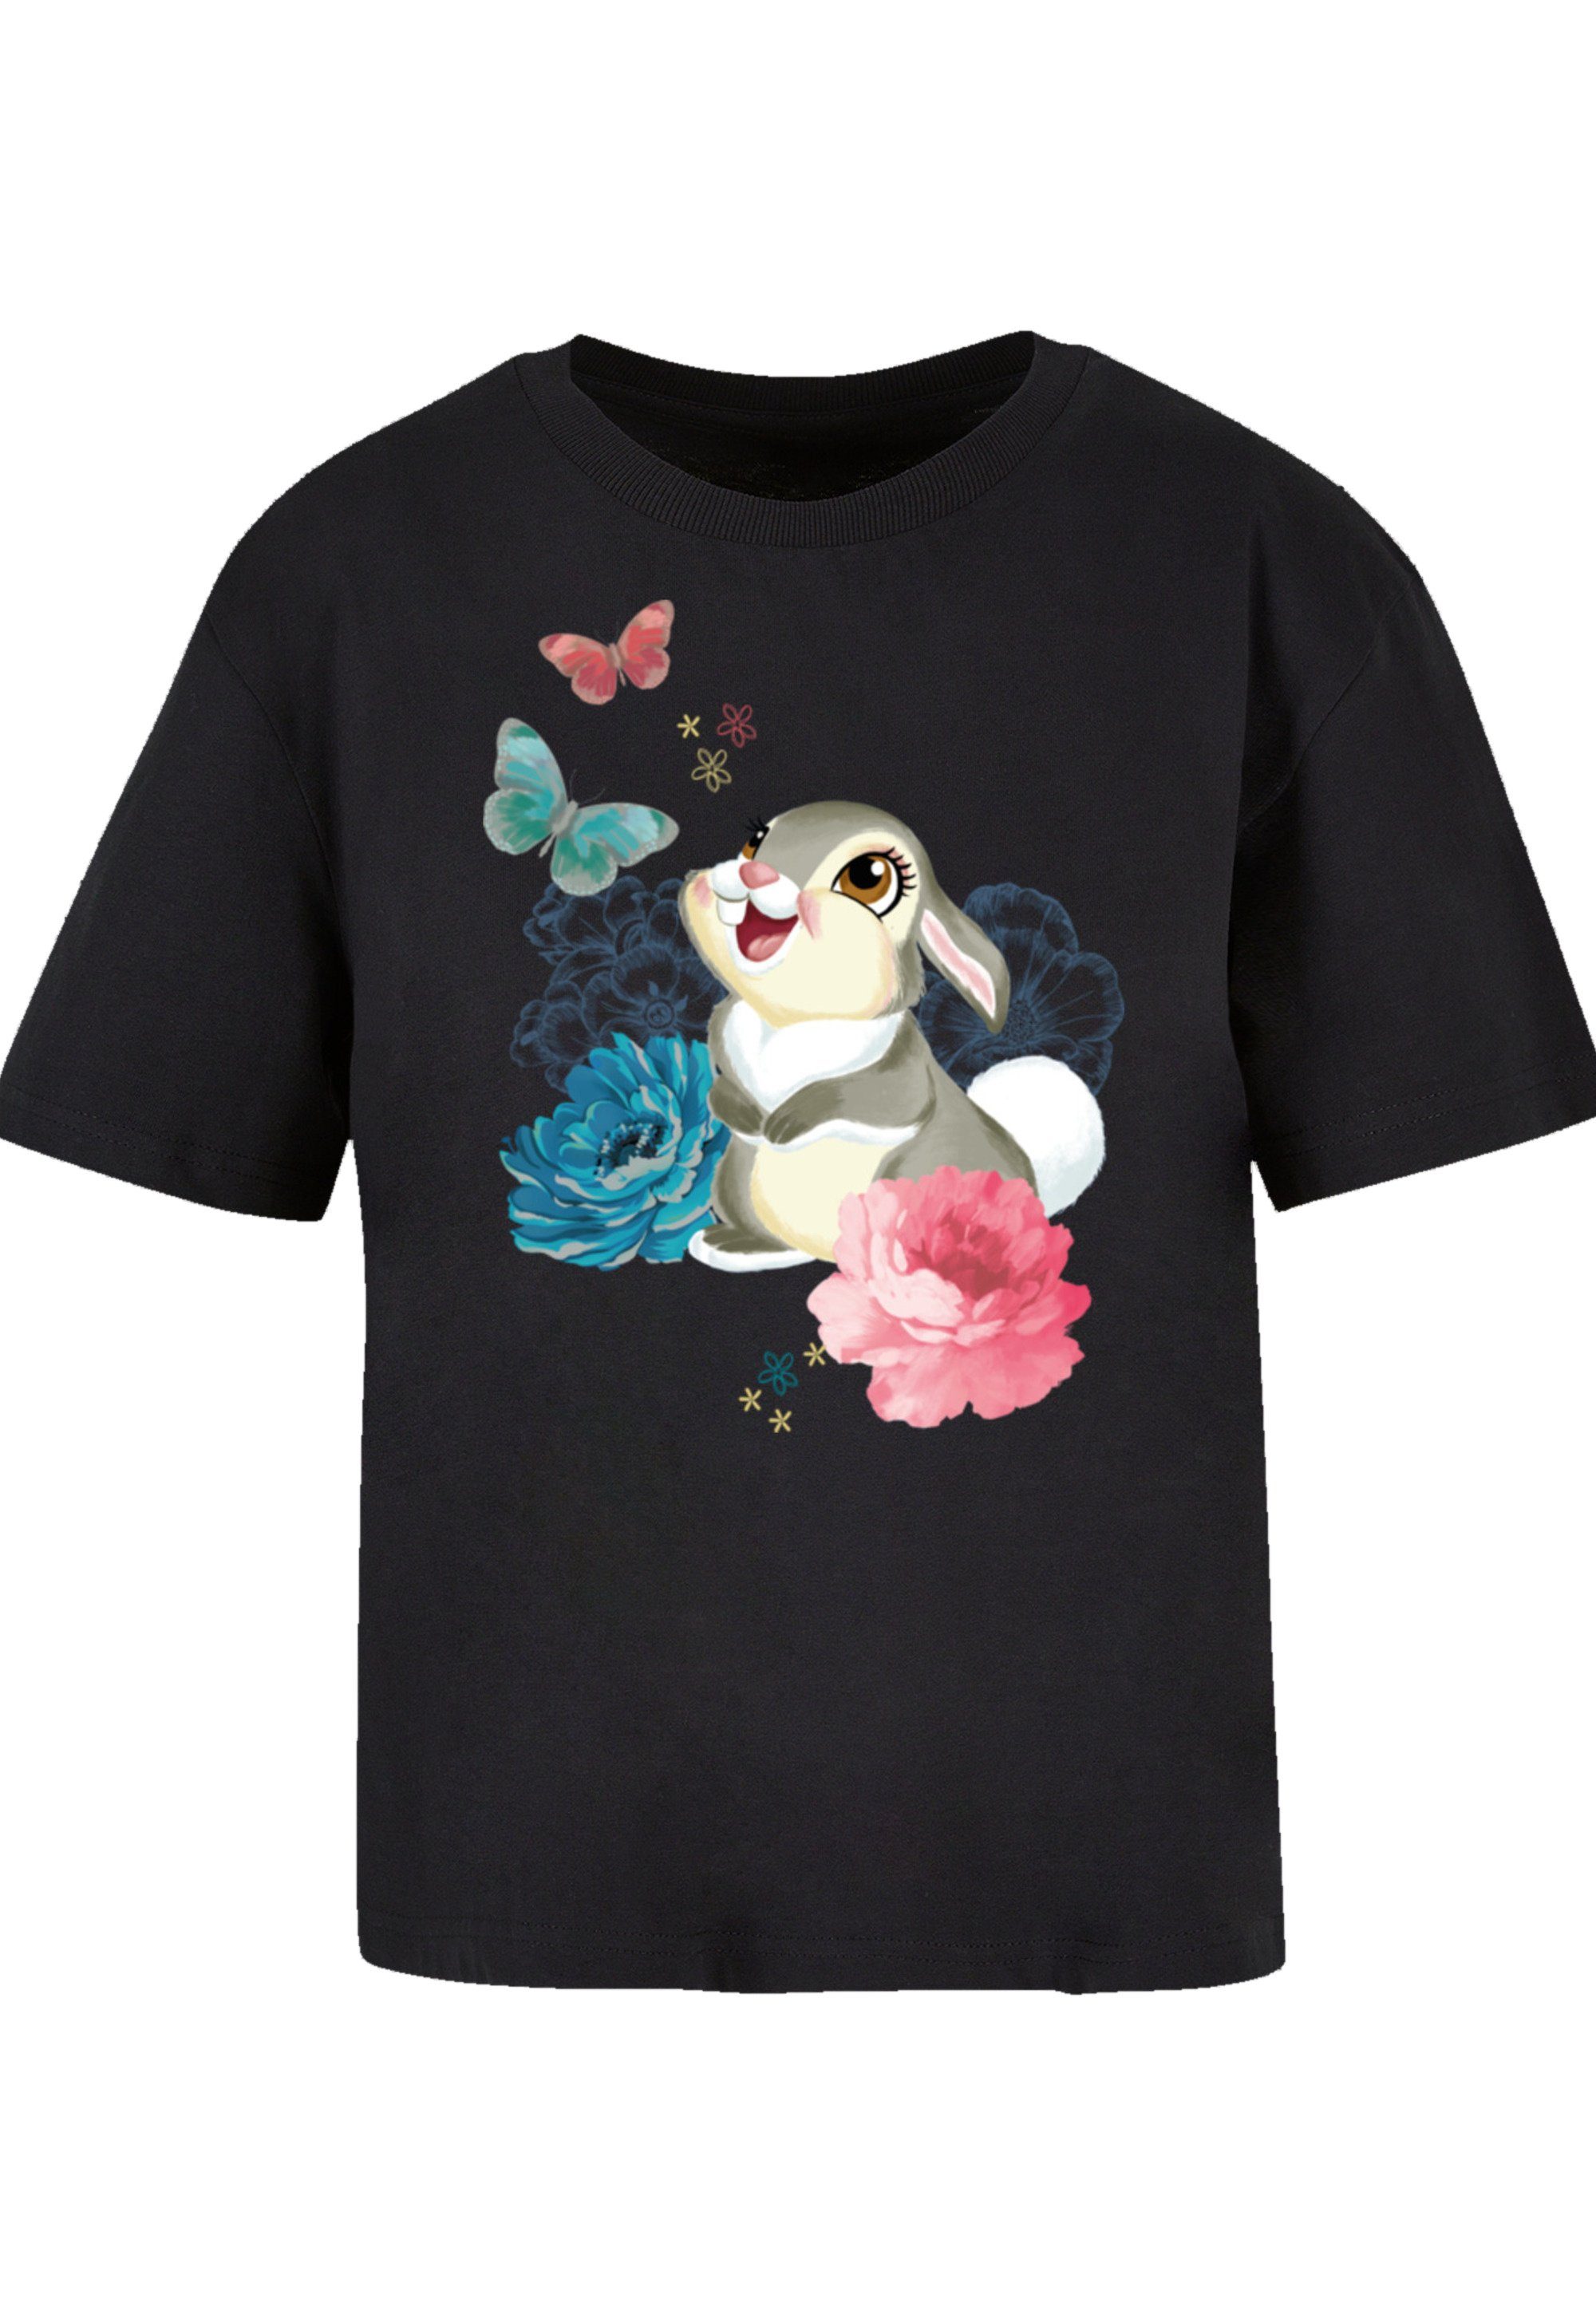 T-Shirt vielseitig Disney Komfortabel F4NT4STIC Qualität, Premium Bambi Klopfer und kombinierbar